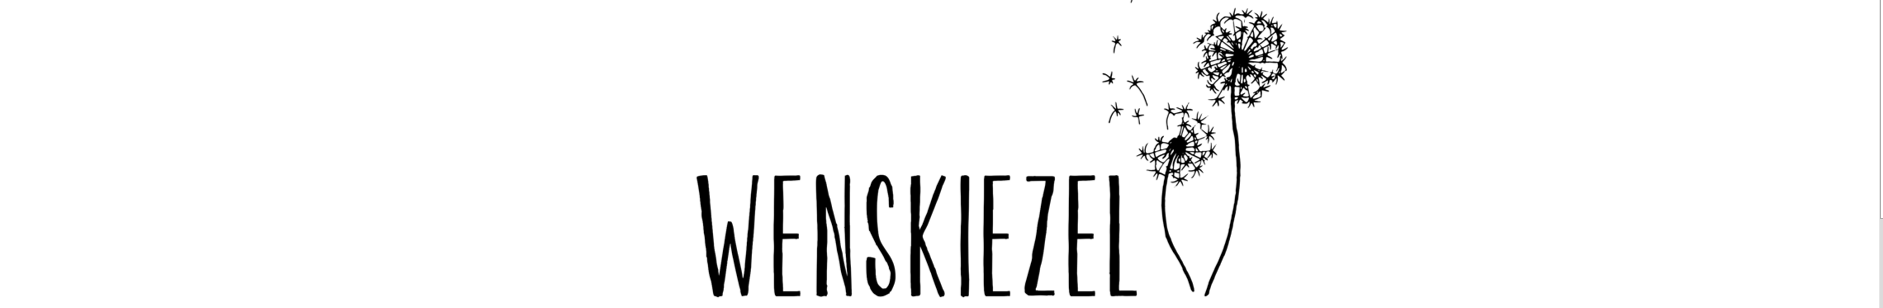 Wenskiezel